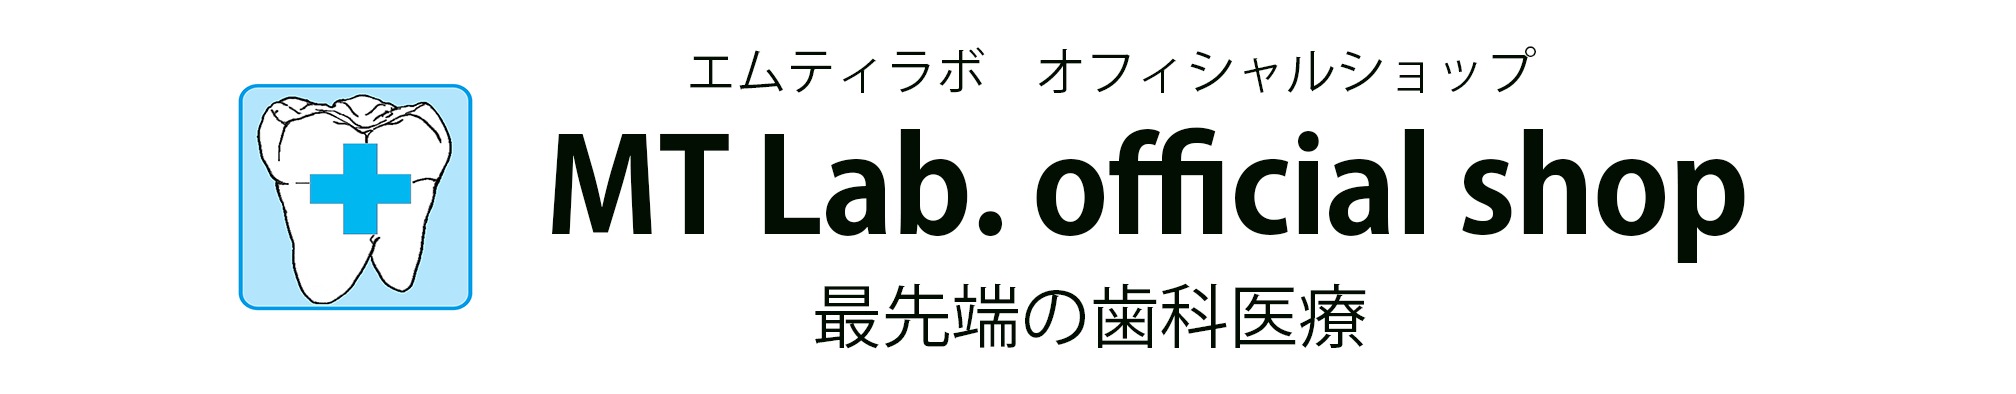 MT Lab. official shop